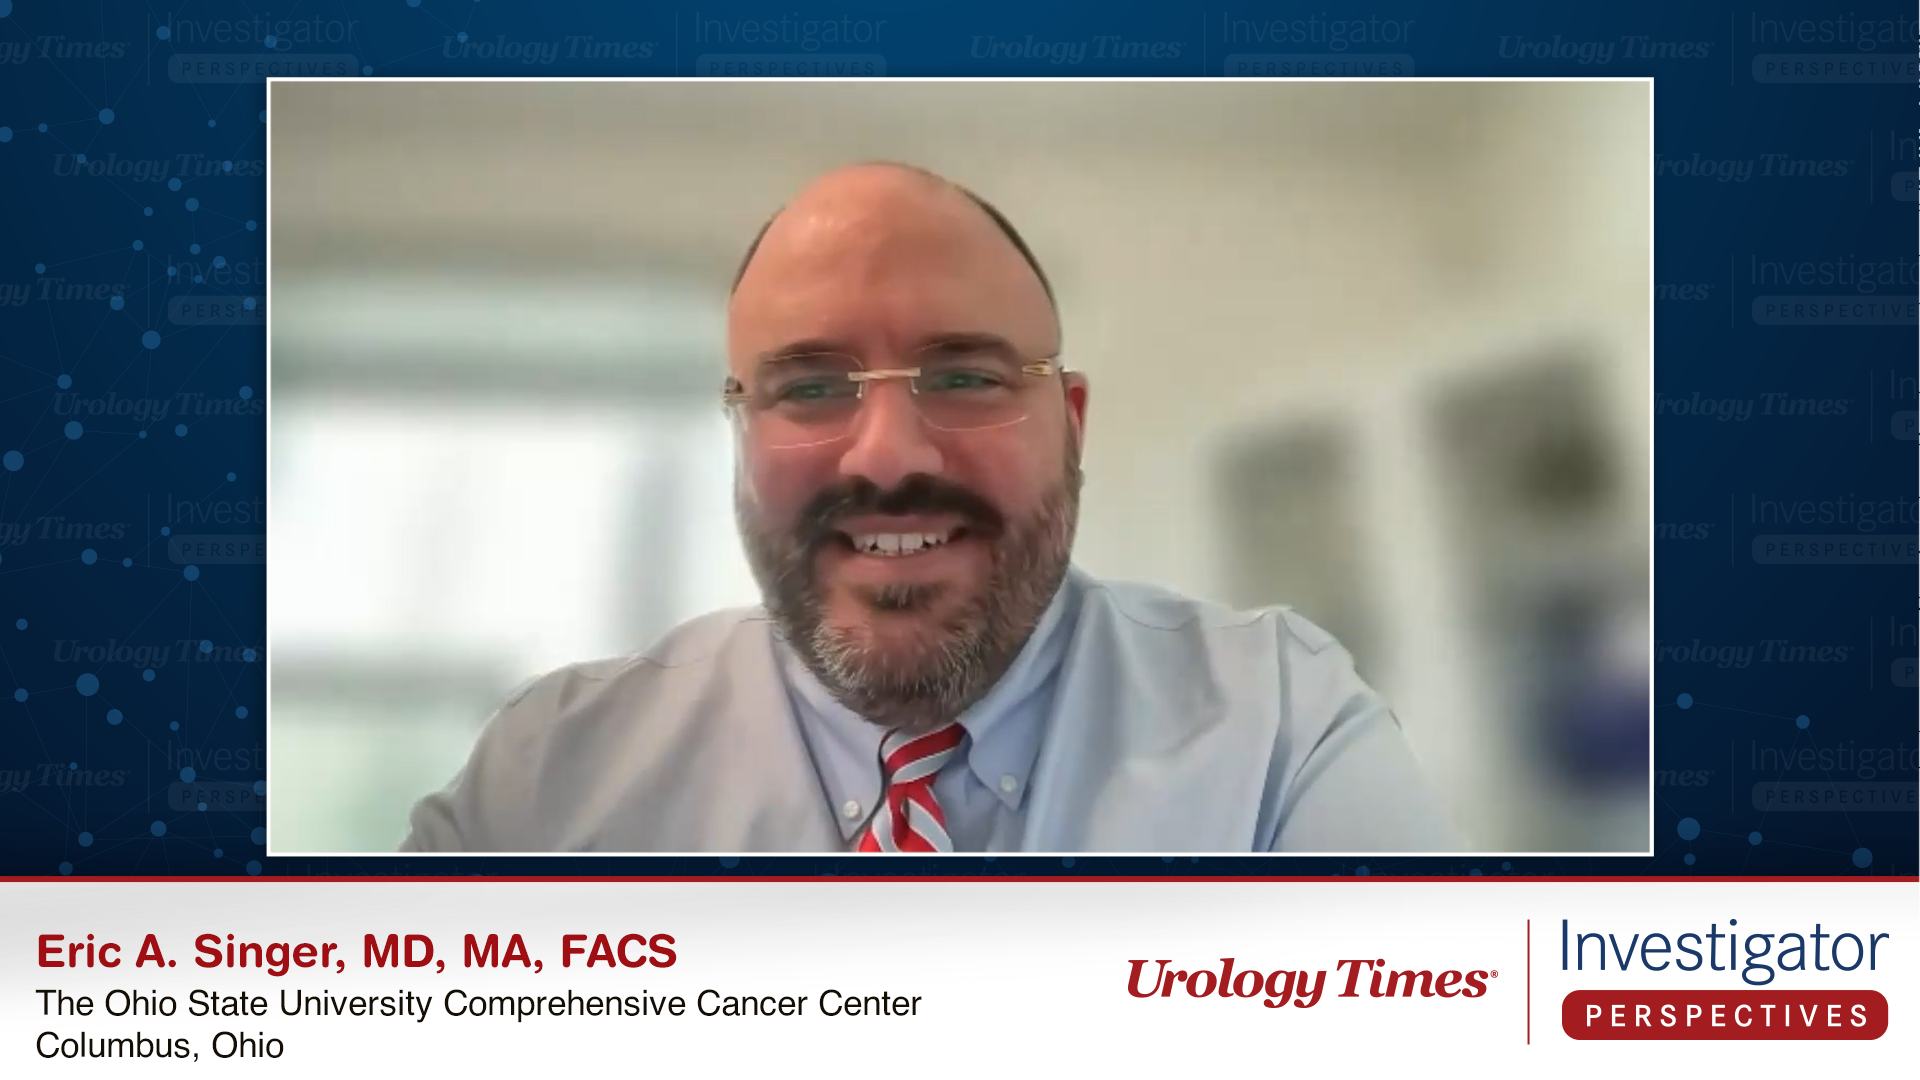 Eric A. Singer, MD, MA, FACS, an expert on bladder cancer